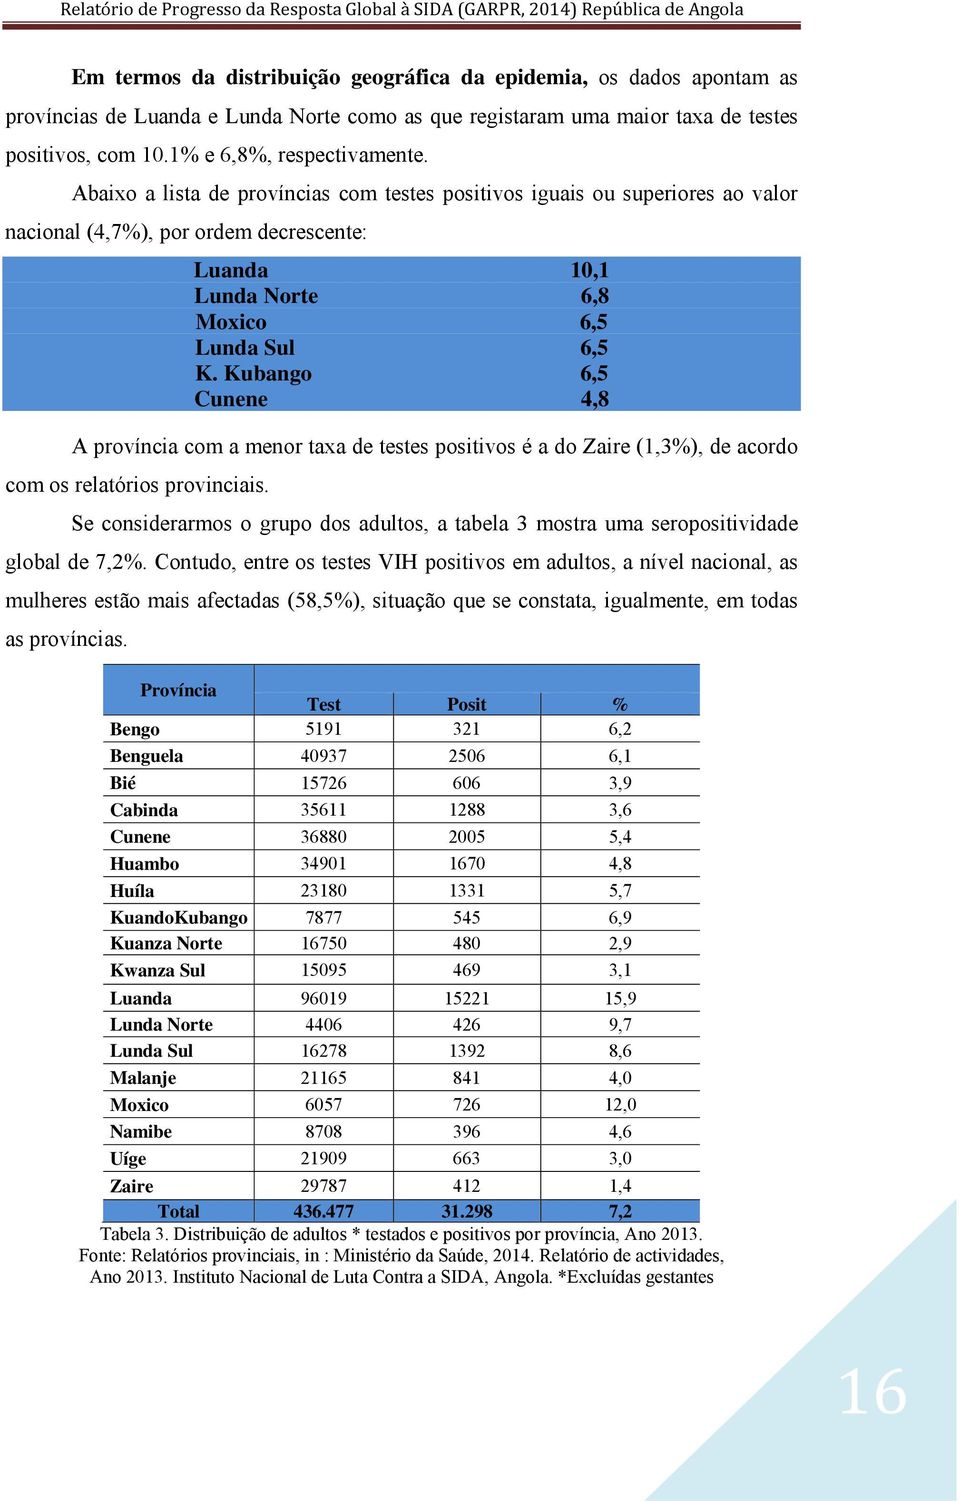 Kubango 6,5 Cunene 4,8 A província com a menor taxa de testes positivos é a do Zaire (1,3%), de acordo com os relatórios provinciais.